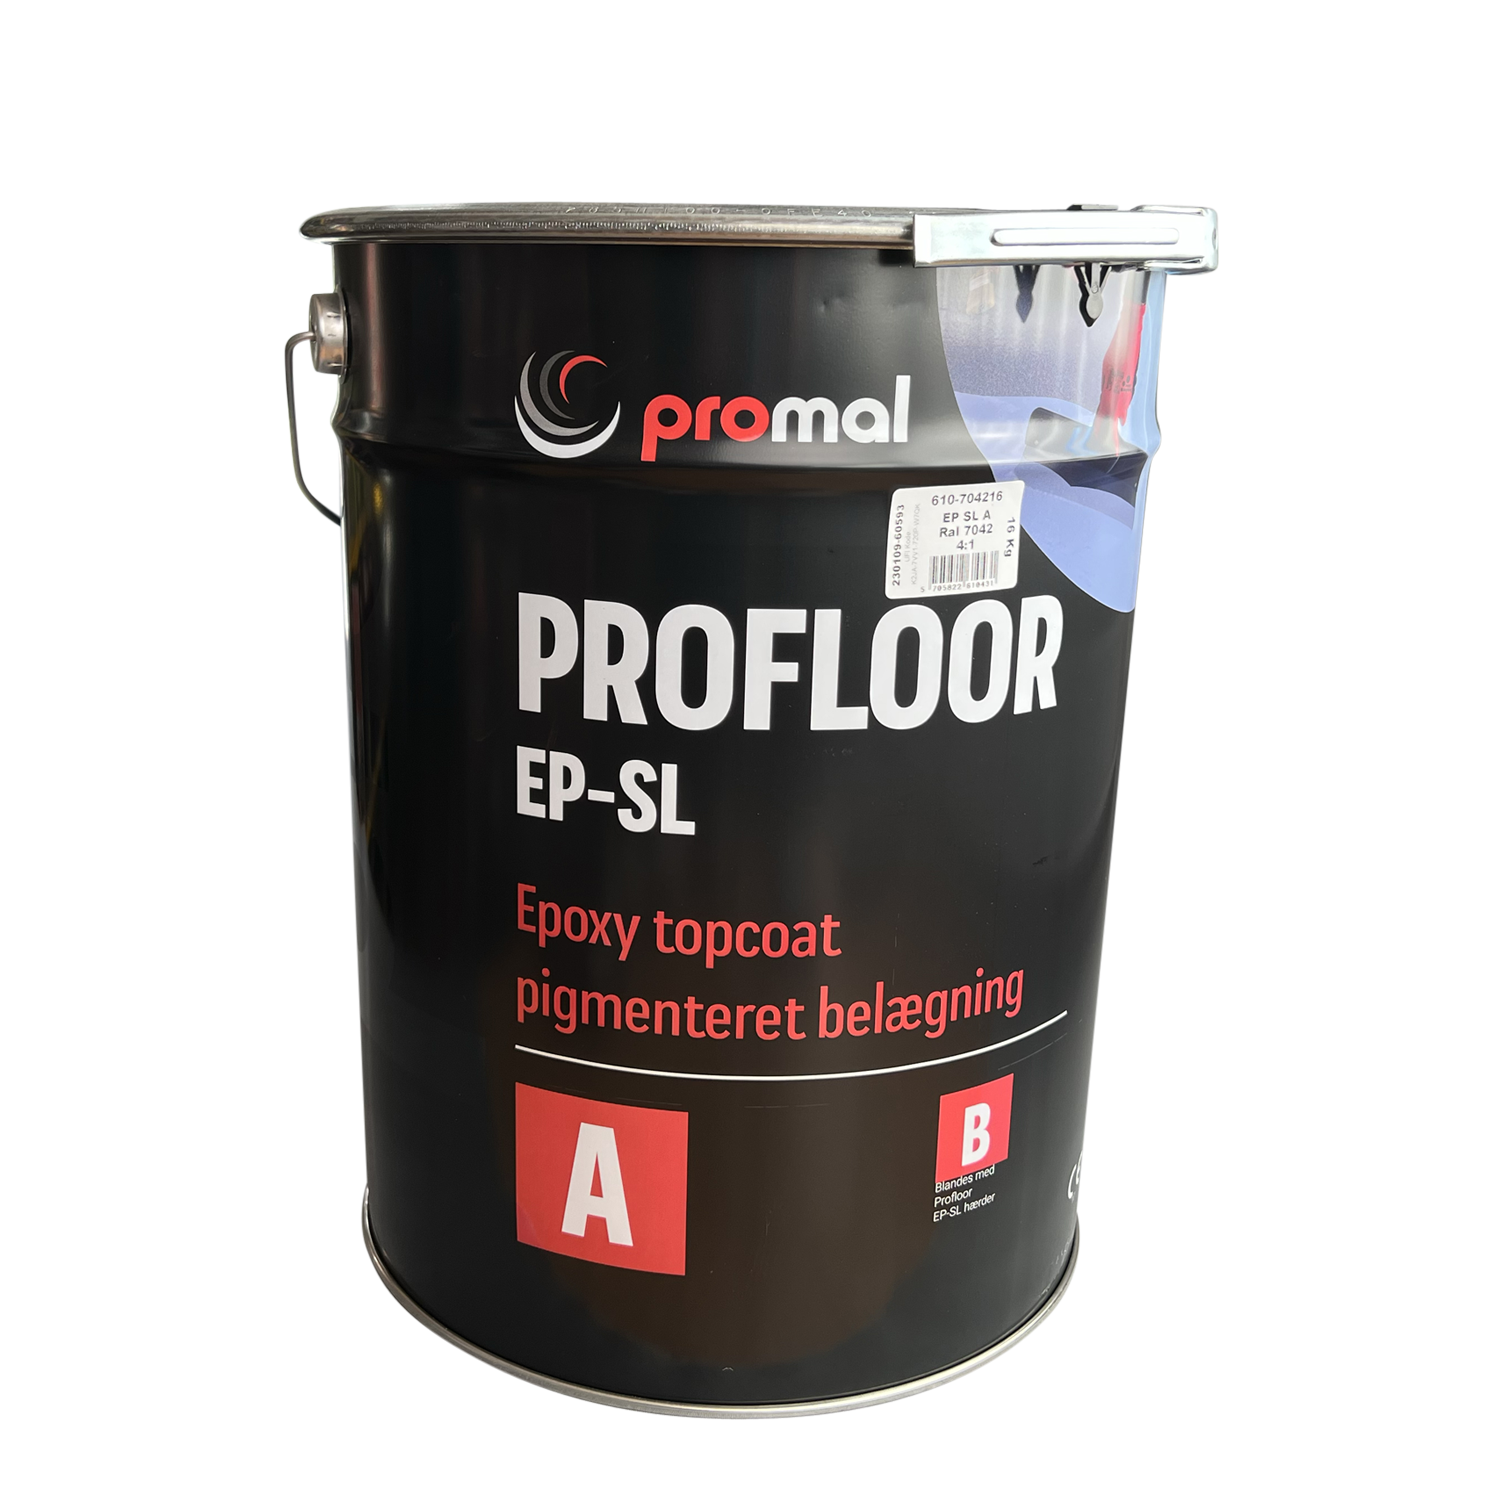 610-profloor-ep-sl-16-kg.png